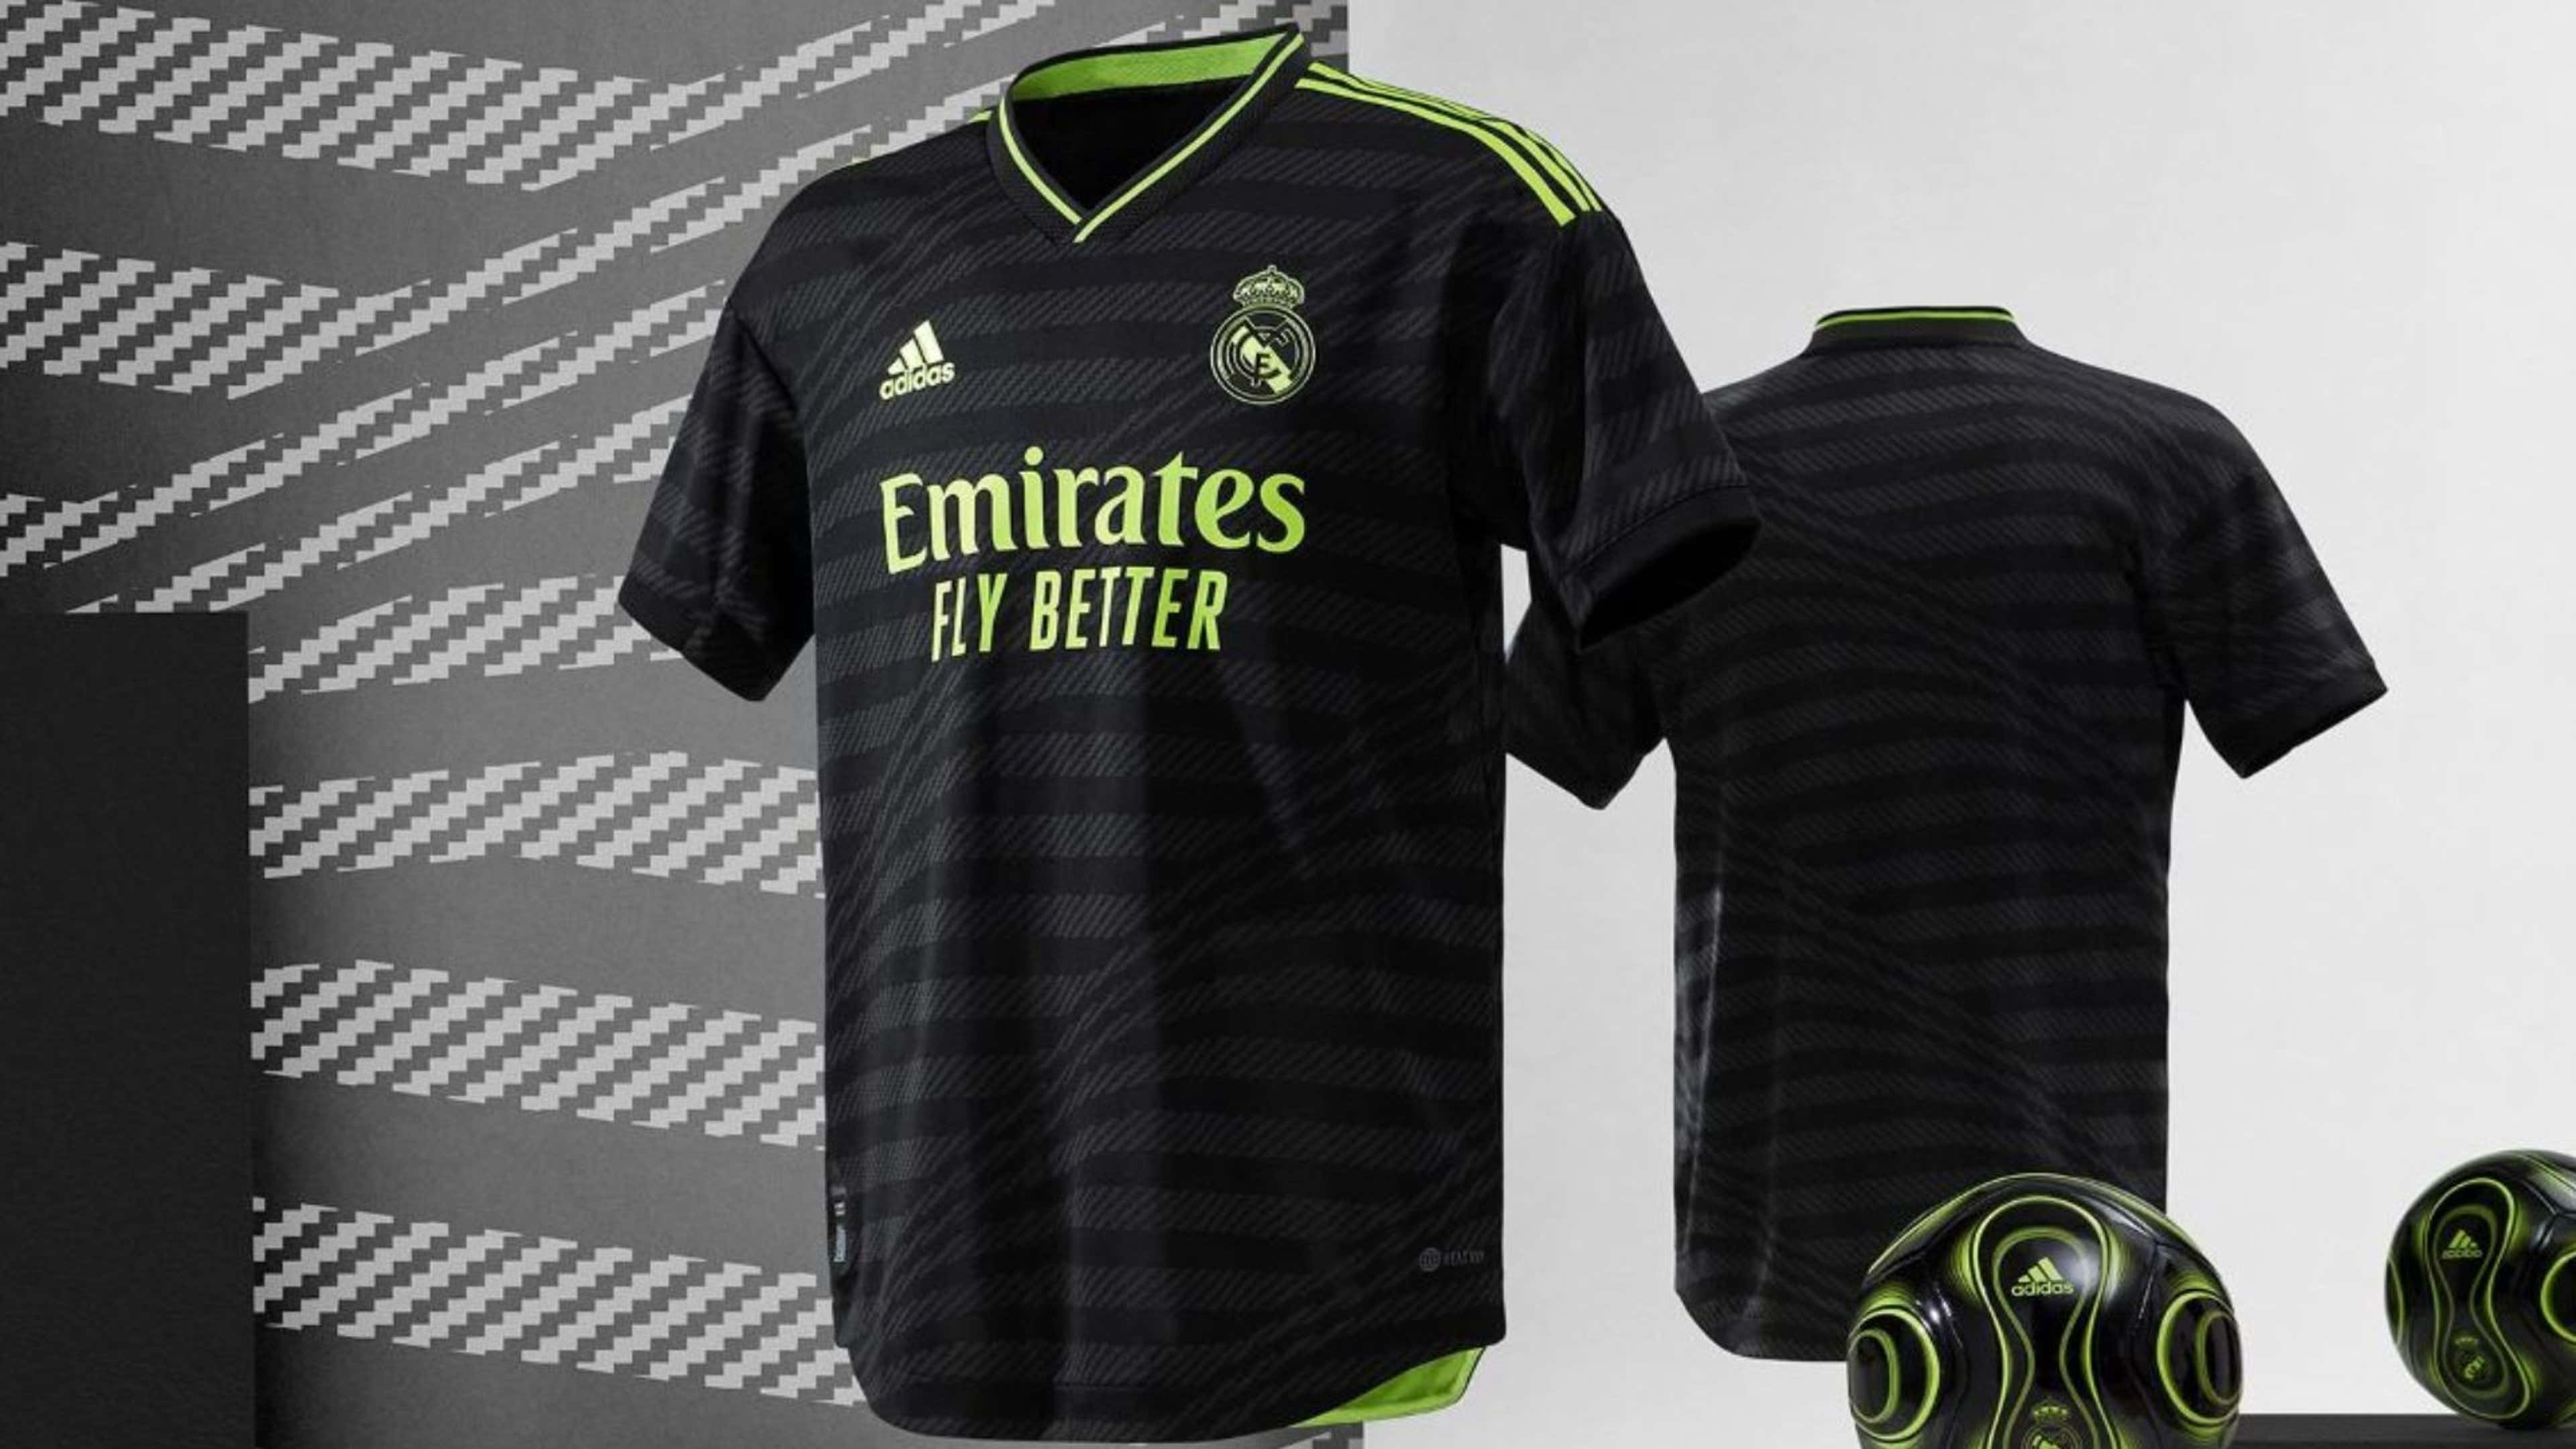 Real Madrid Conjunto Niño Camiseta y Pantalón Primera Equipación